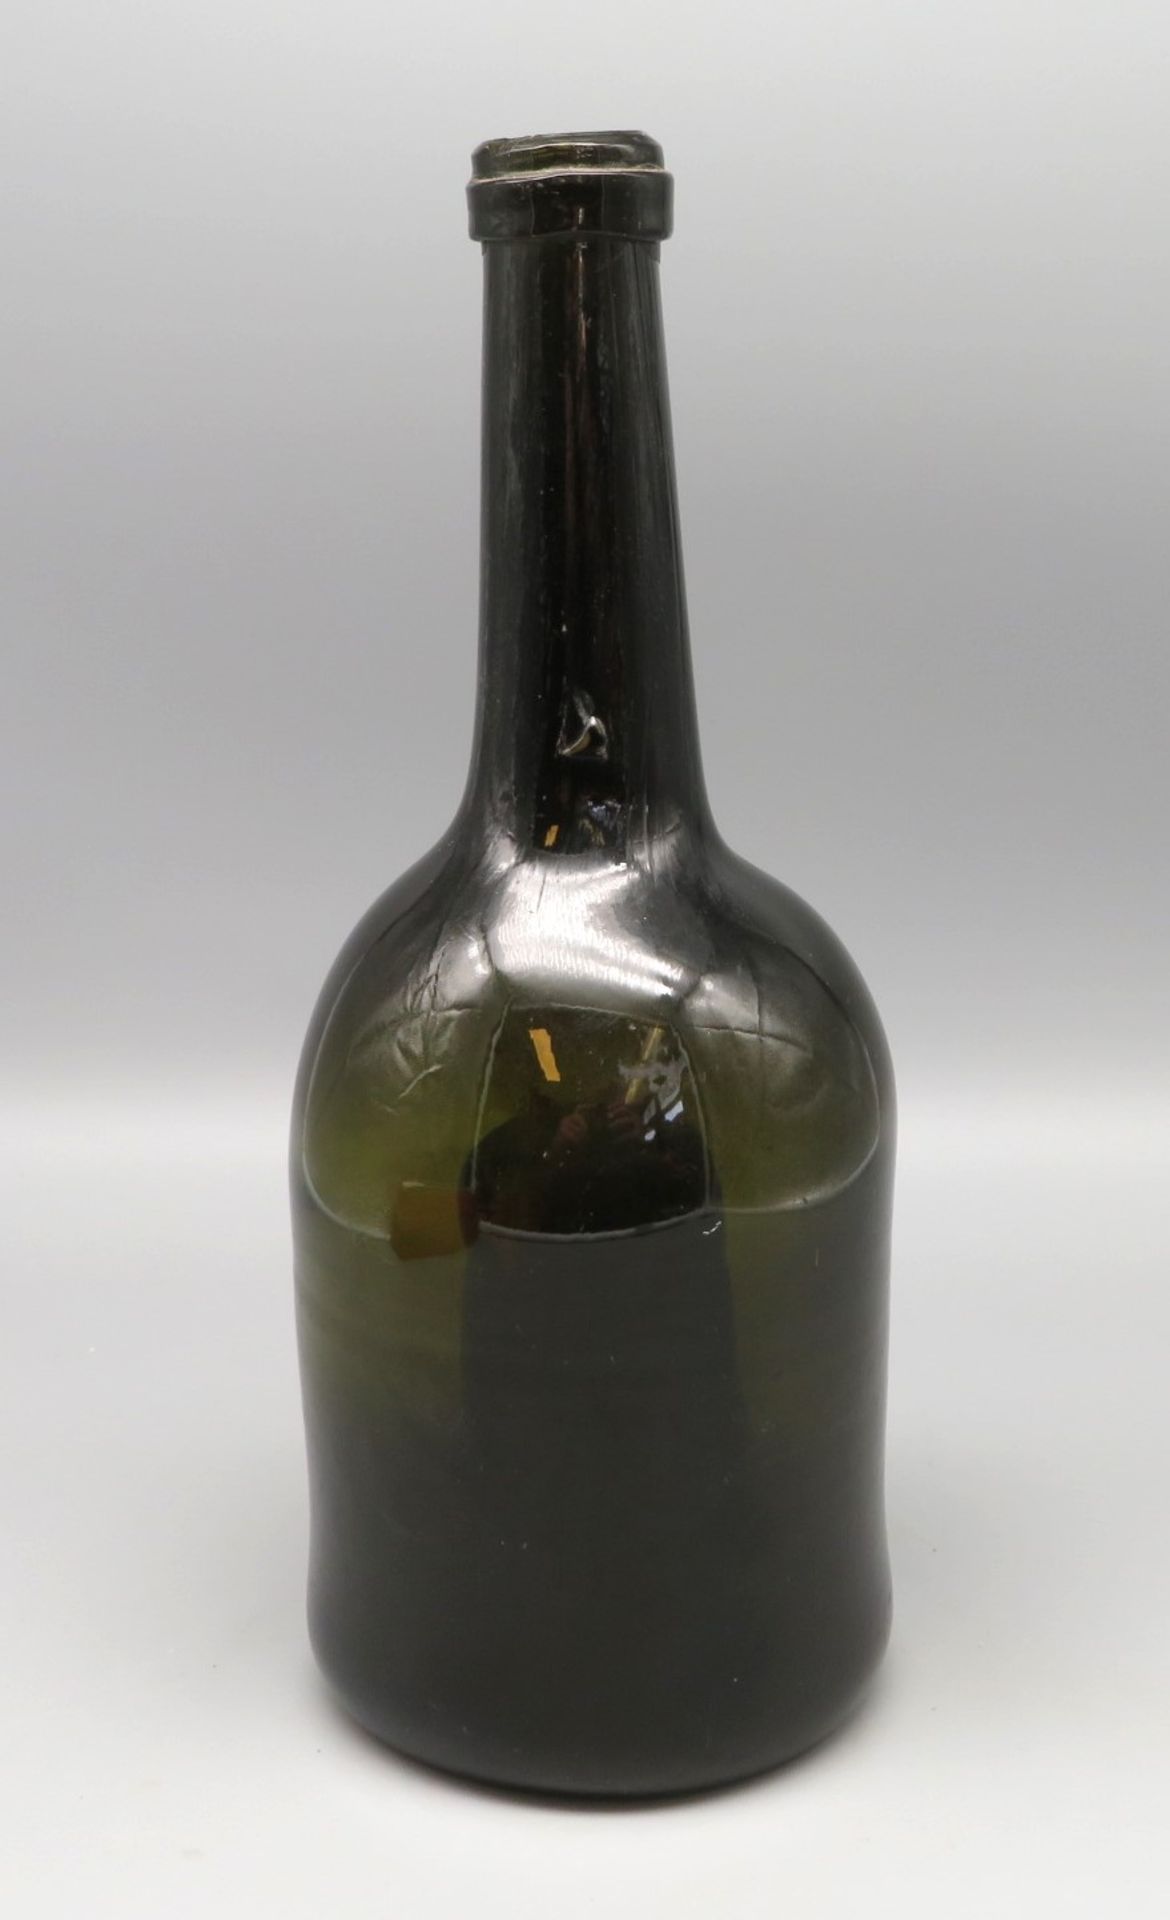 Antike Flasche, 18. Jahrhundert, grün eingefärbtes Glas, h 25,6 cm, d 9,7 cm.